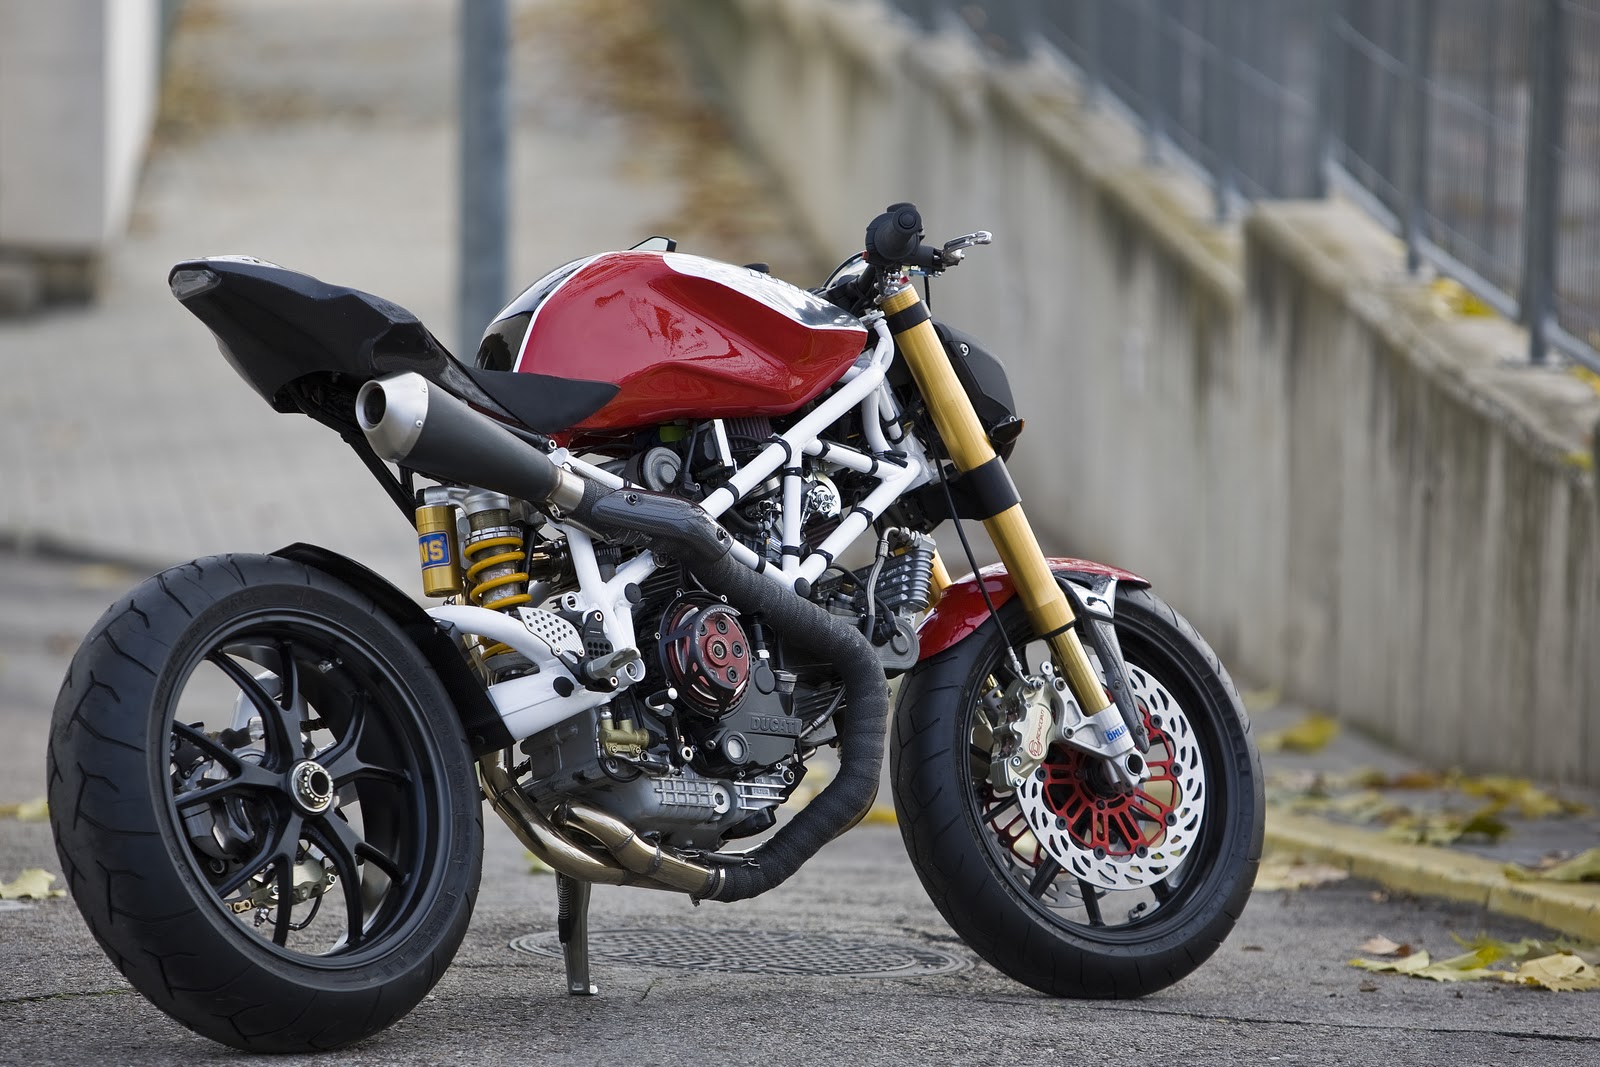 Parade Modifikasi Cafe Racer Ducati Desain Modifikasi 